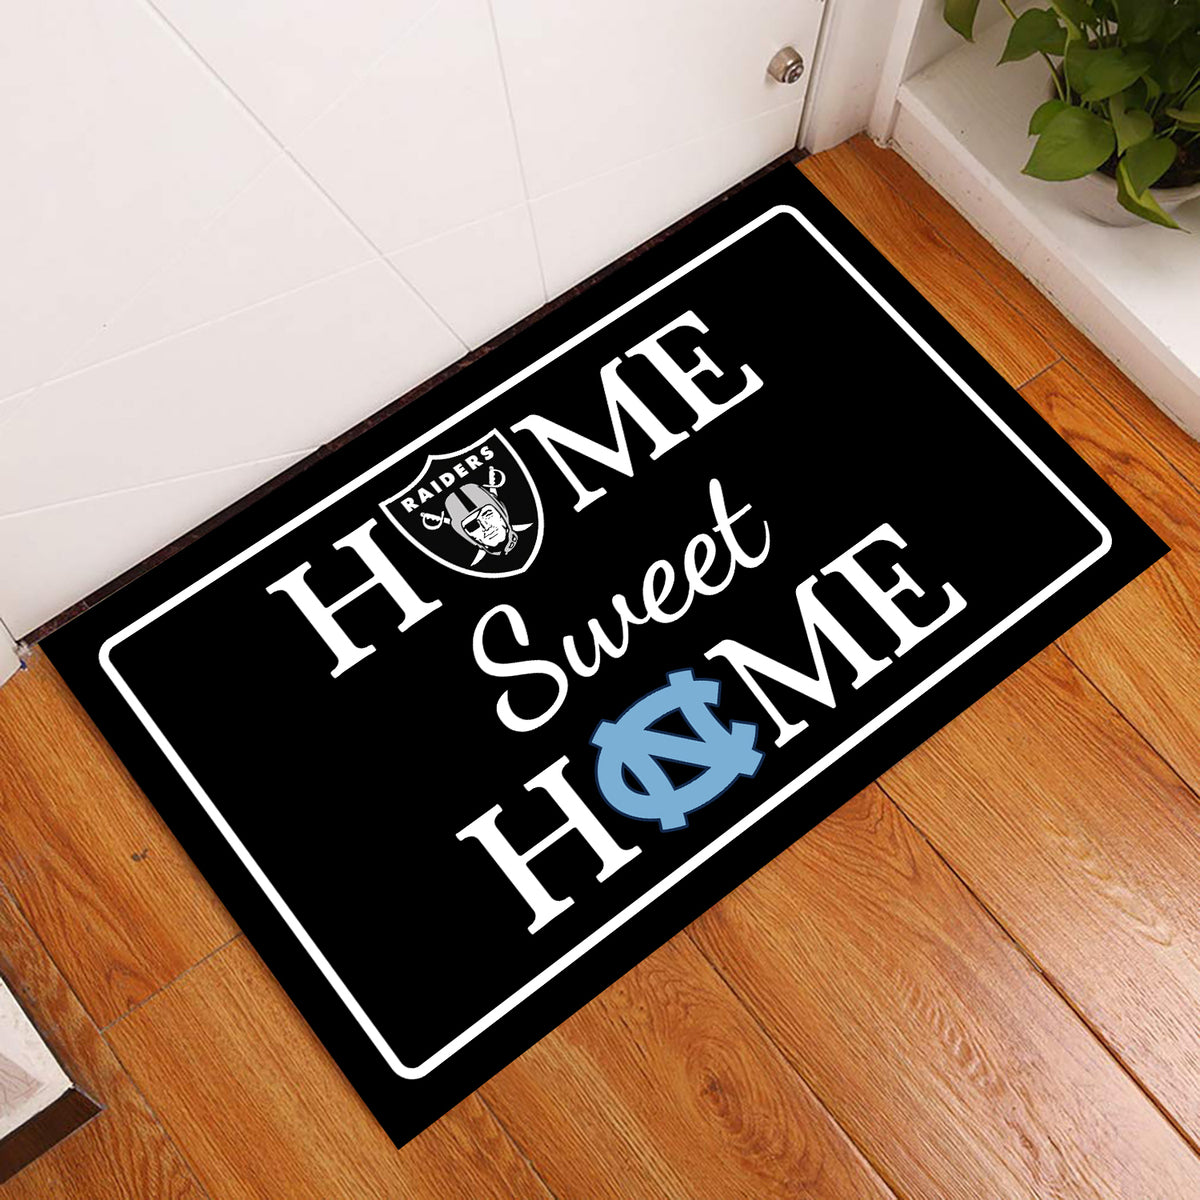 Home Sweet Home - Customized Doormat For Rachel Fenton - Anti Slip Indoor Doormat